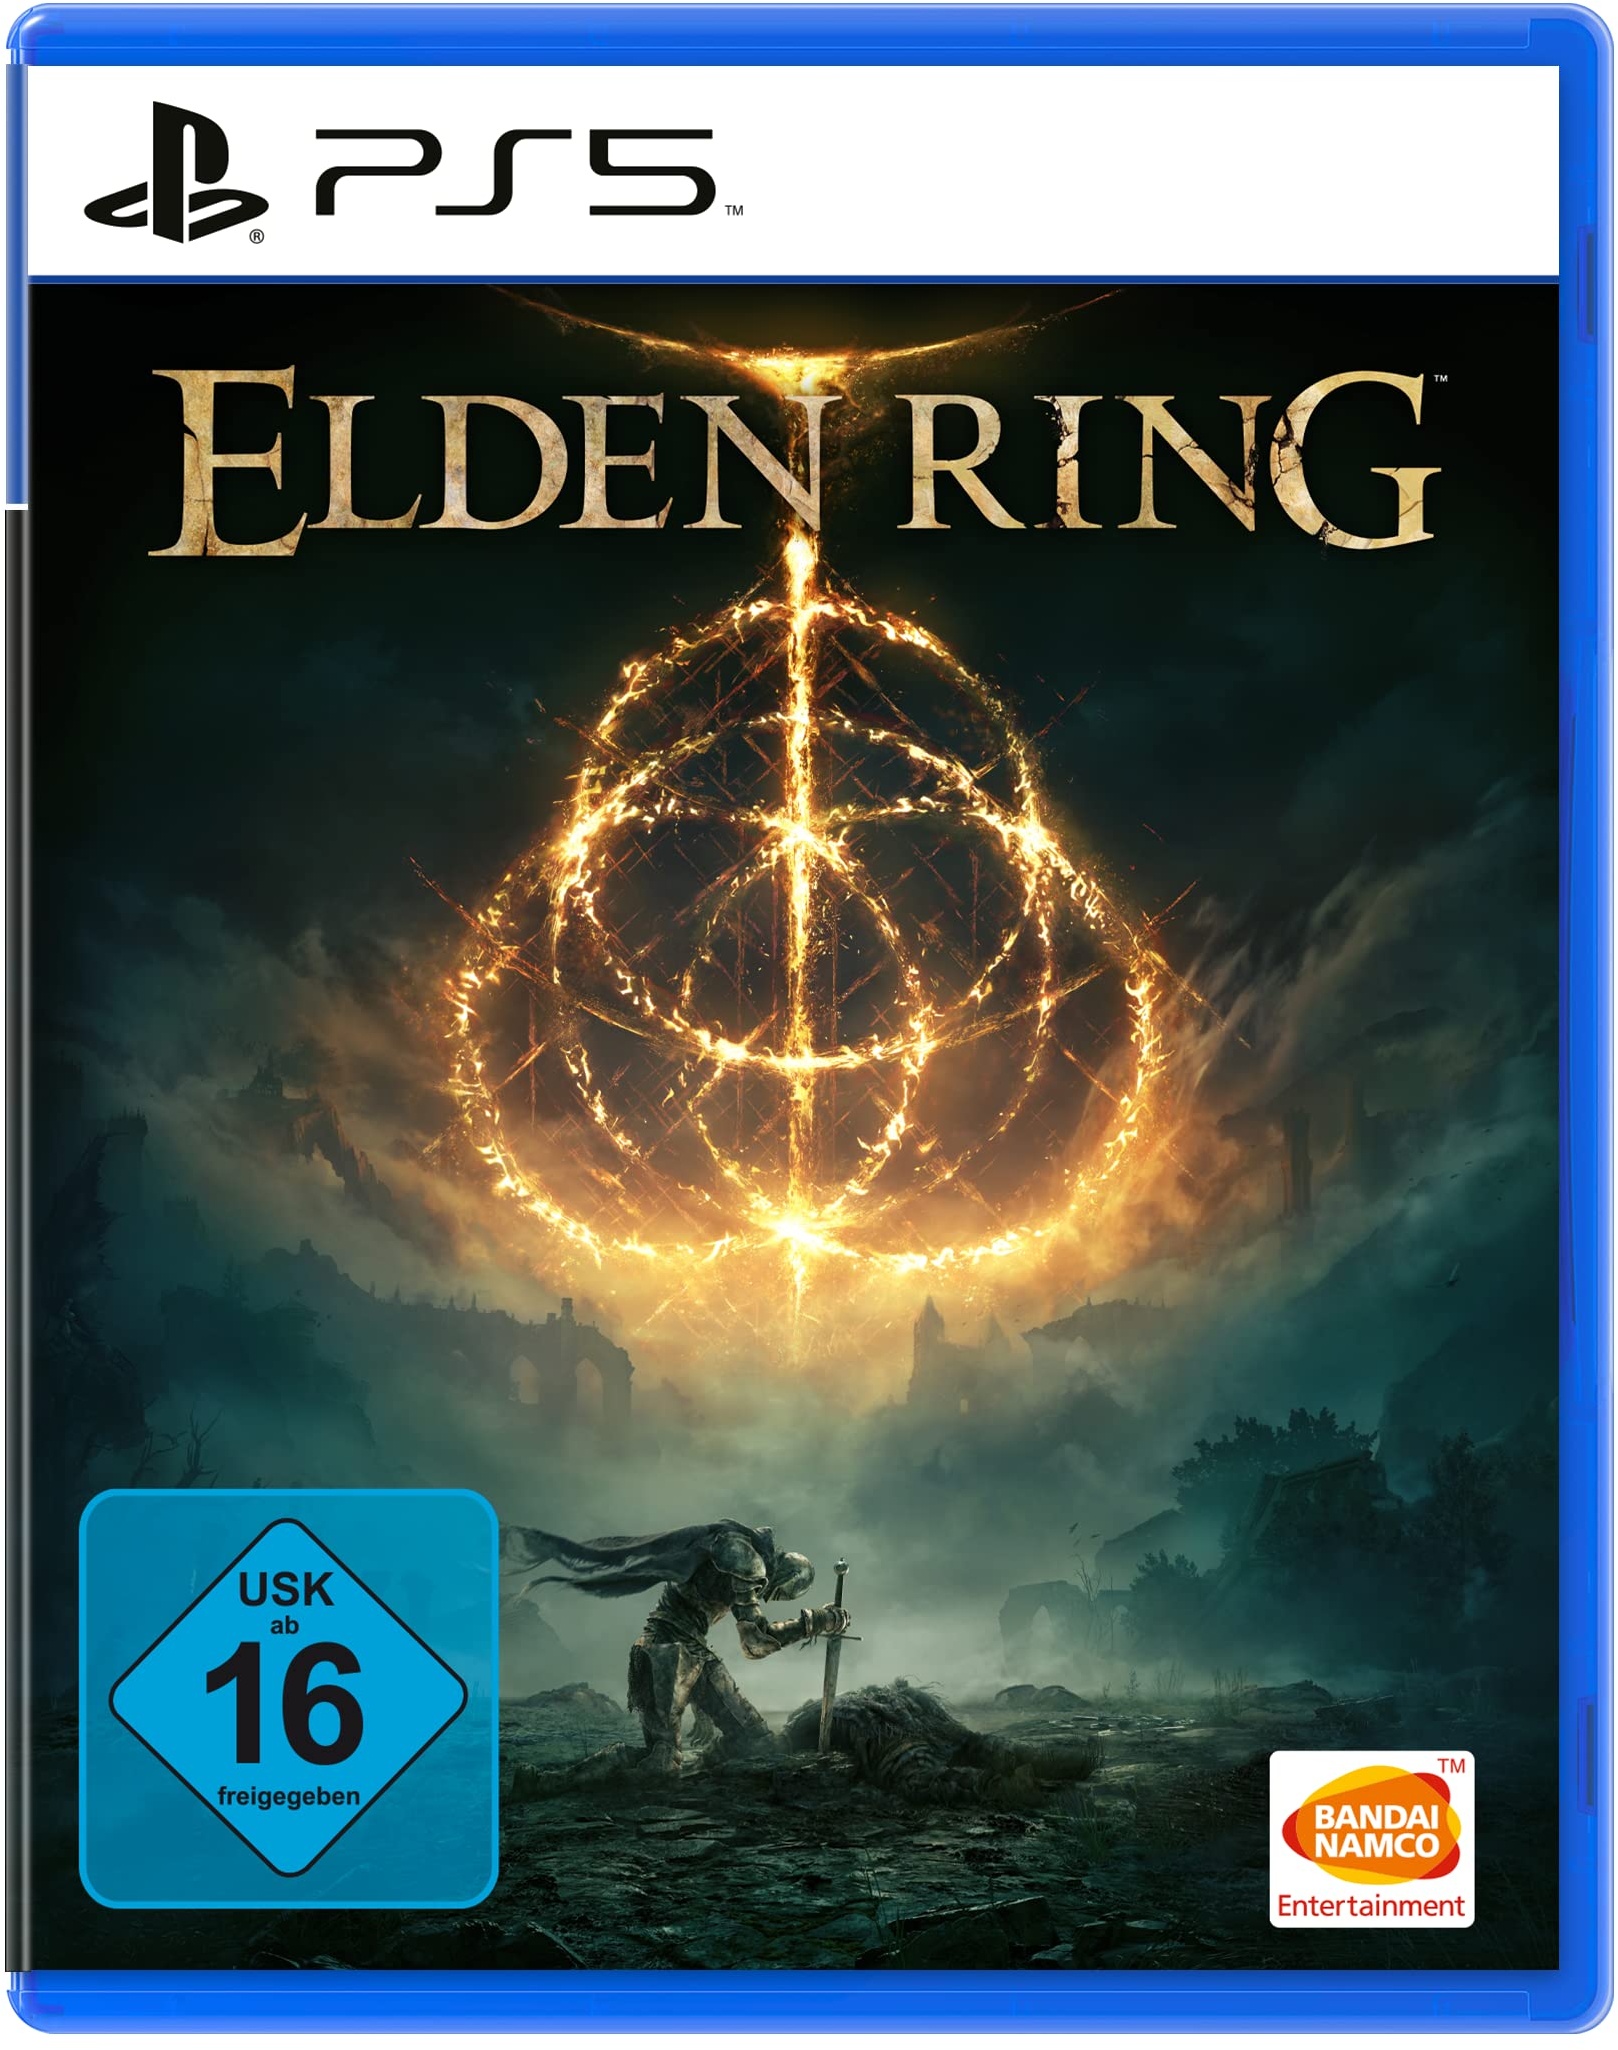 Elden Ring - Standard Edition [PlayStation 5]